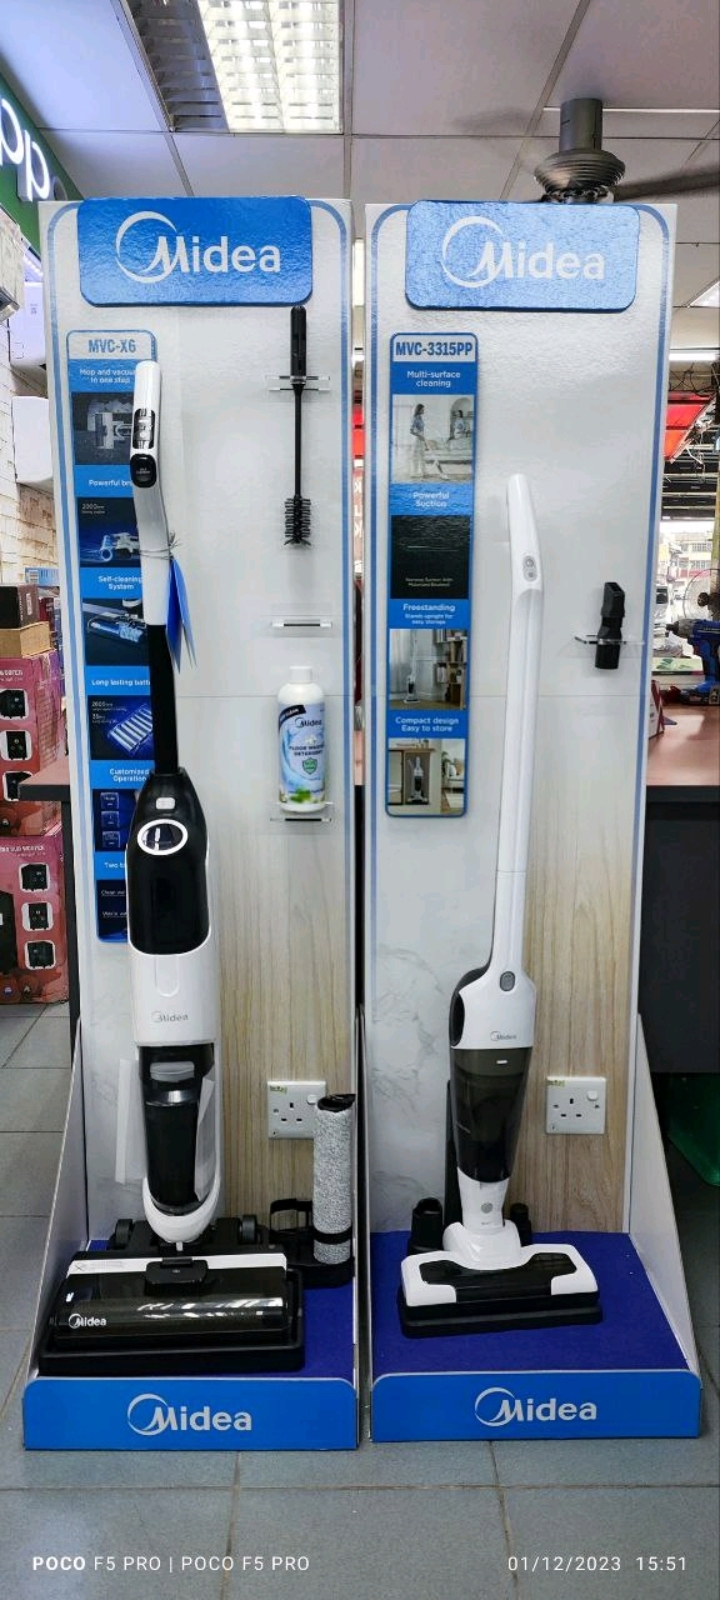 Midea 2 in 1 Wet Dry Vacuum Stick Promosi 